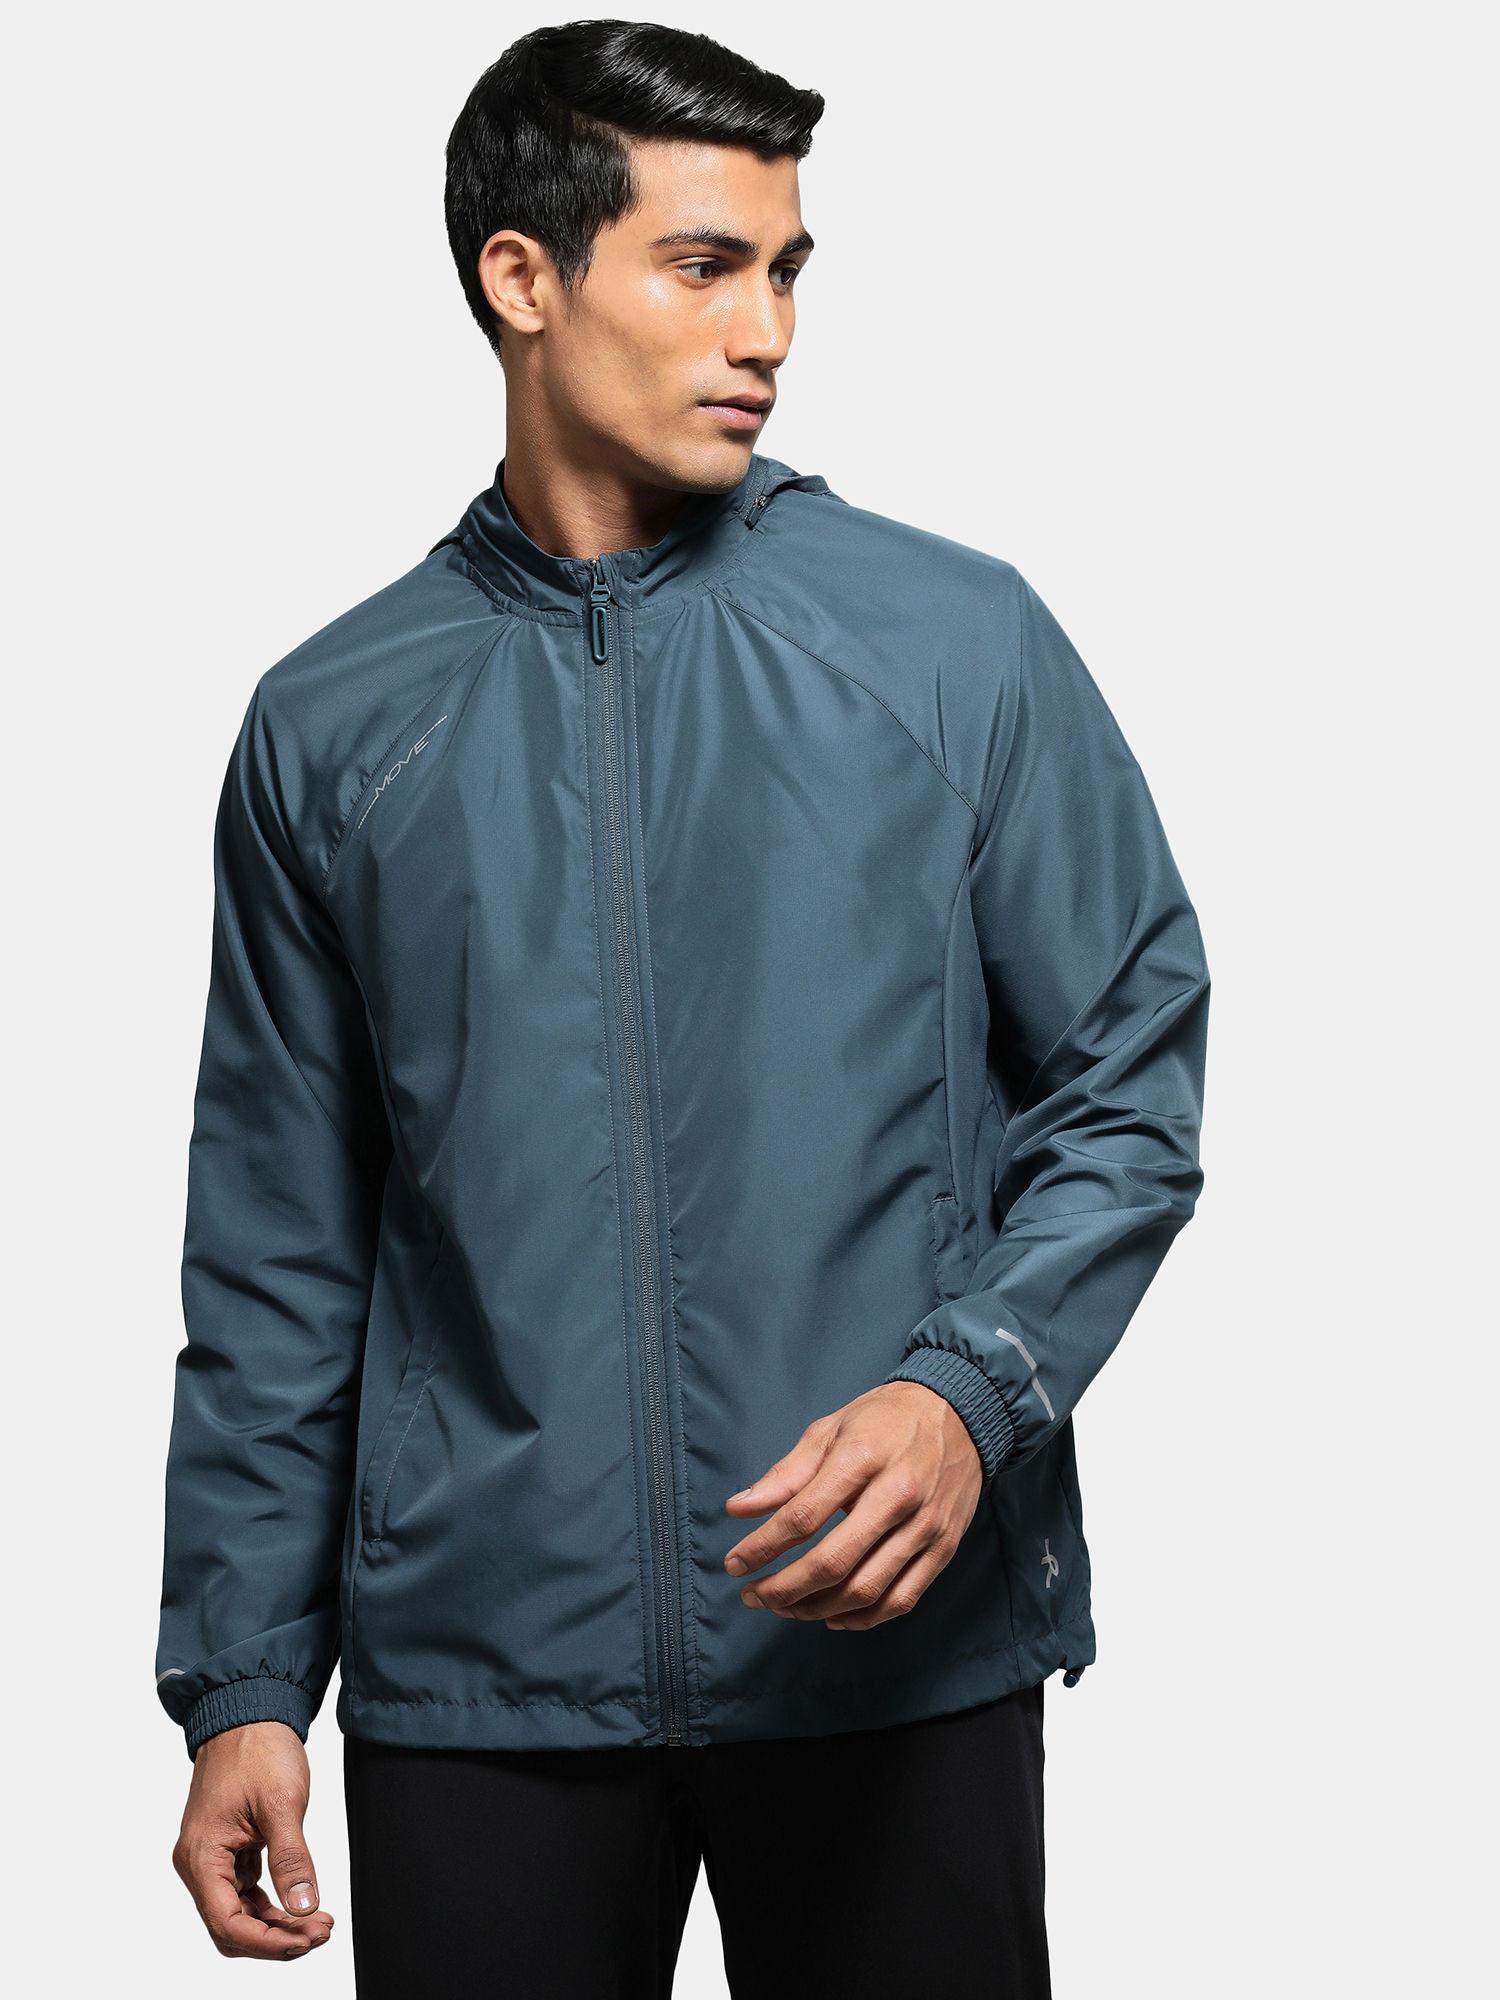 mv40 mens microfiber water resistant convertible hoodie jacket-mid night navy